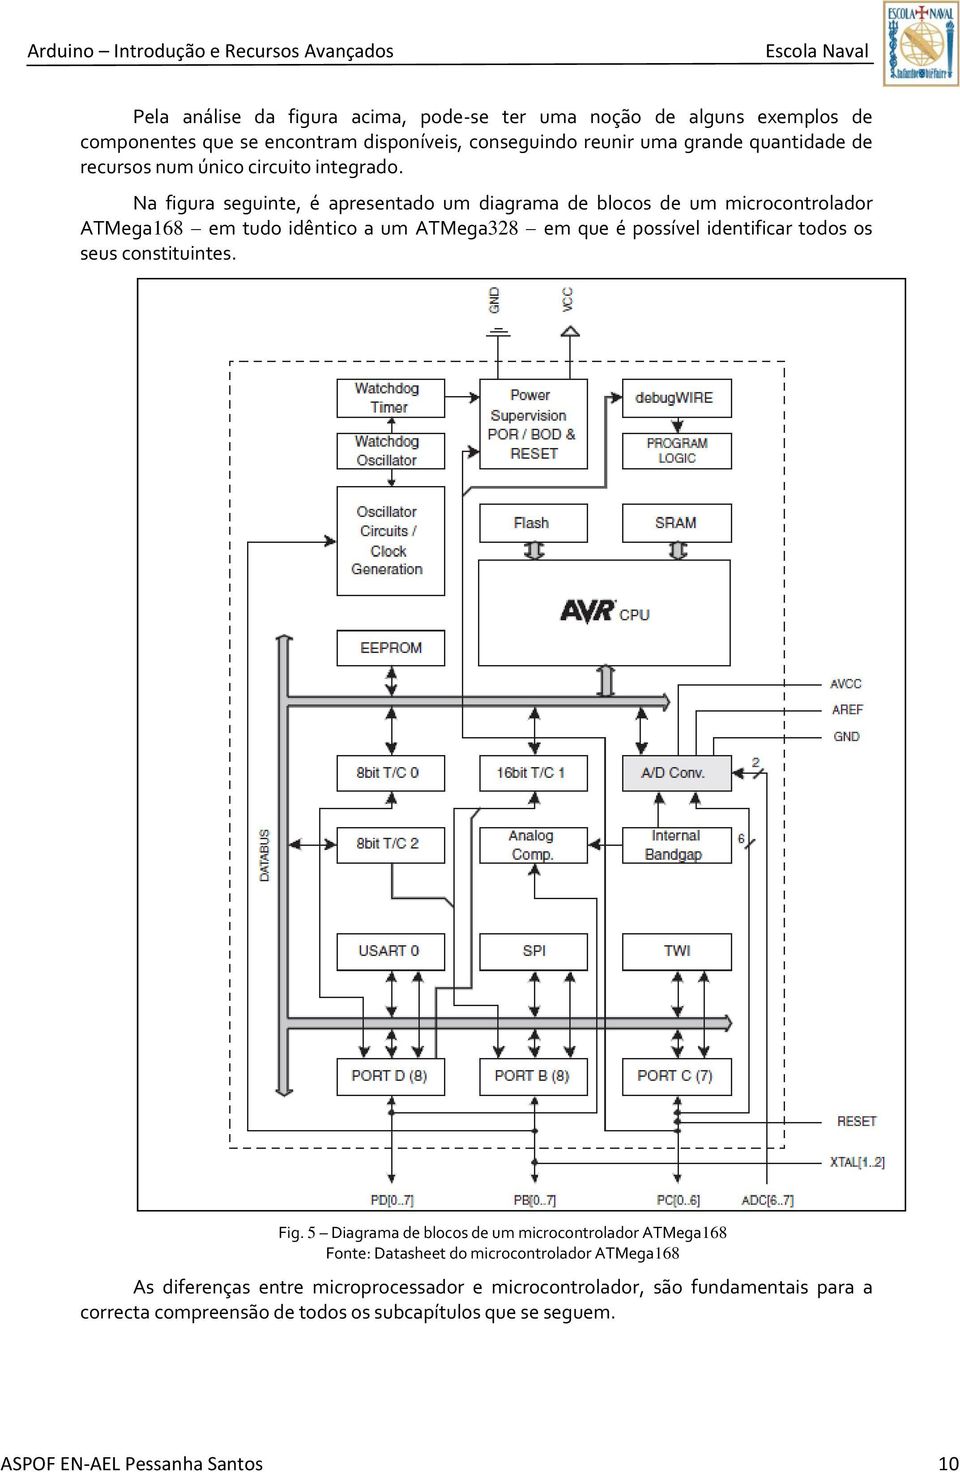 Na figura seguinte, é apresentado um diagrama de blocos de um microcontrolador ATMega168 em tudo idêntico a um ATMega328 em que é possível identificar todos os seus